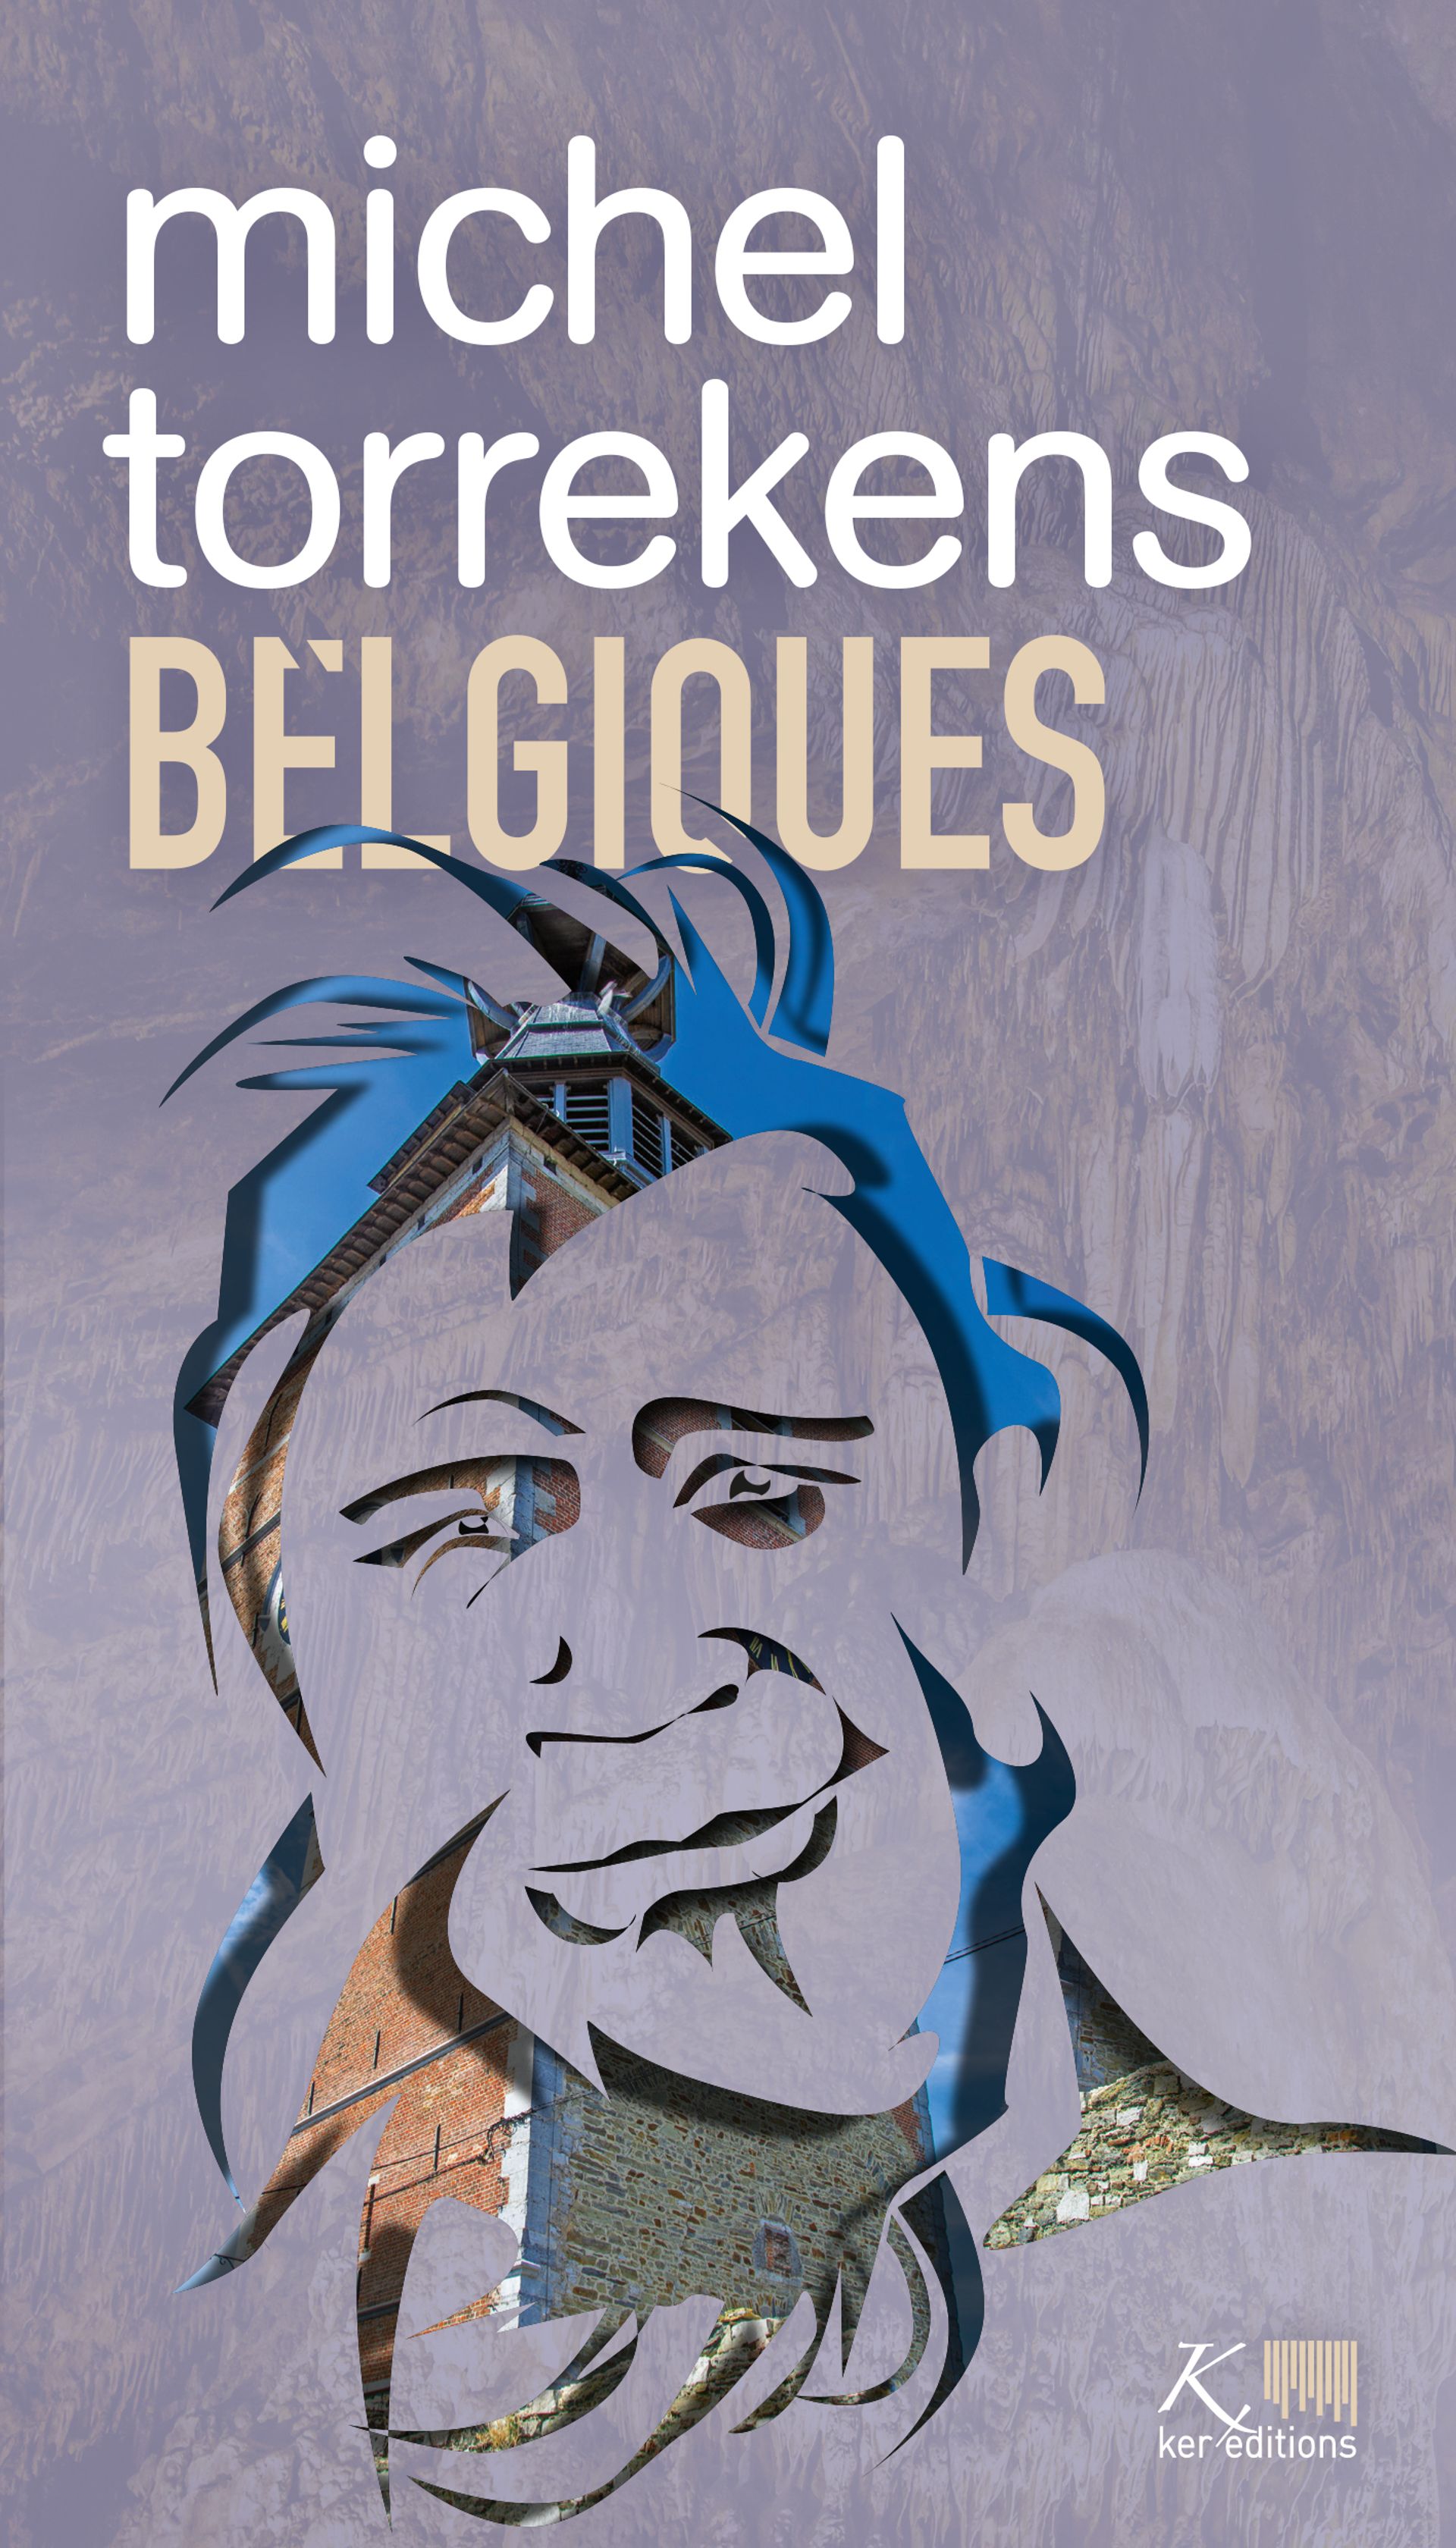 "Belgiques" de Michel Torrekens, et ses mots qui nous bercent